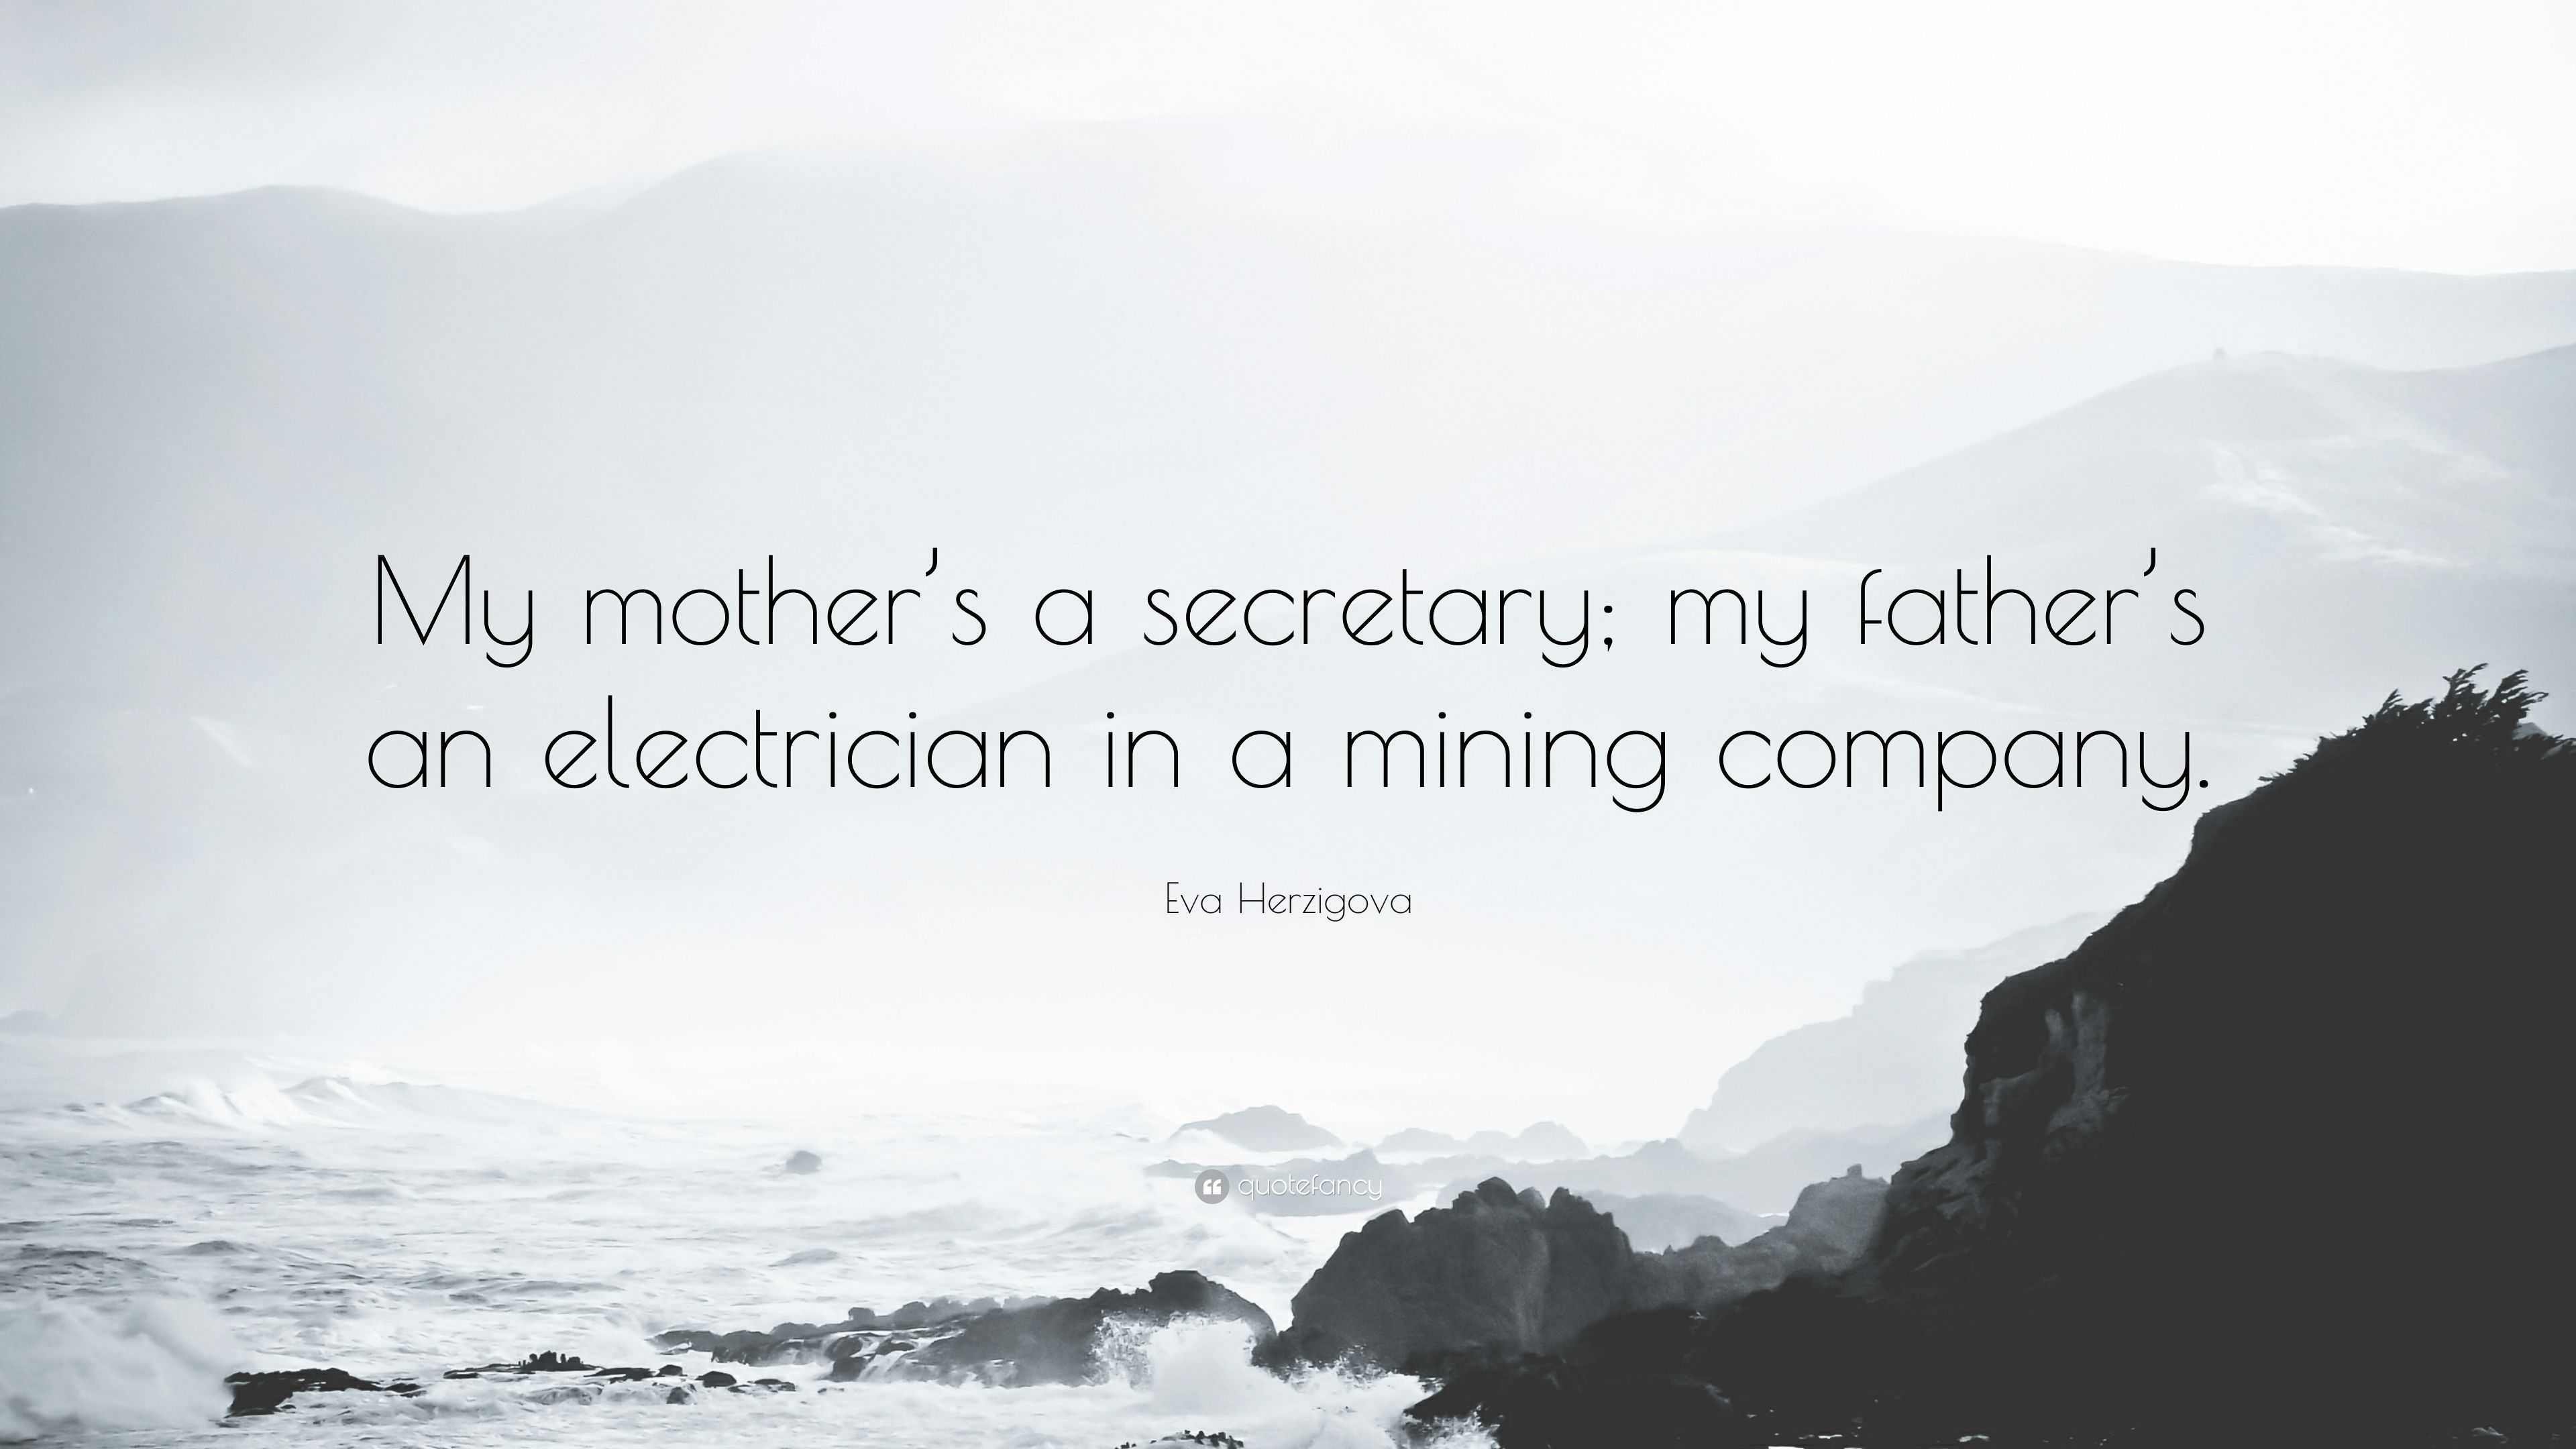 Eva Herzigova Quote: "My mother’s a secretary; my father’s an electric...